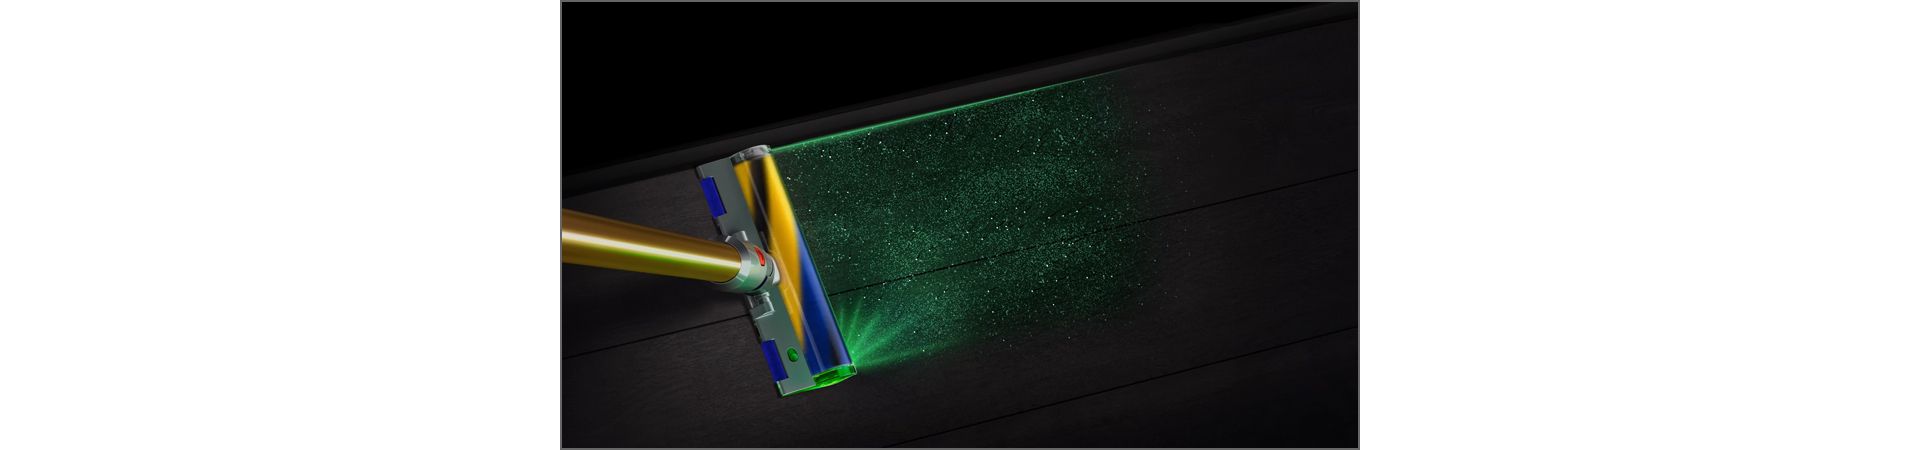 מברשת פלאפי Dyson Laser Slim Fluffy מגלה חלקיקי אבק